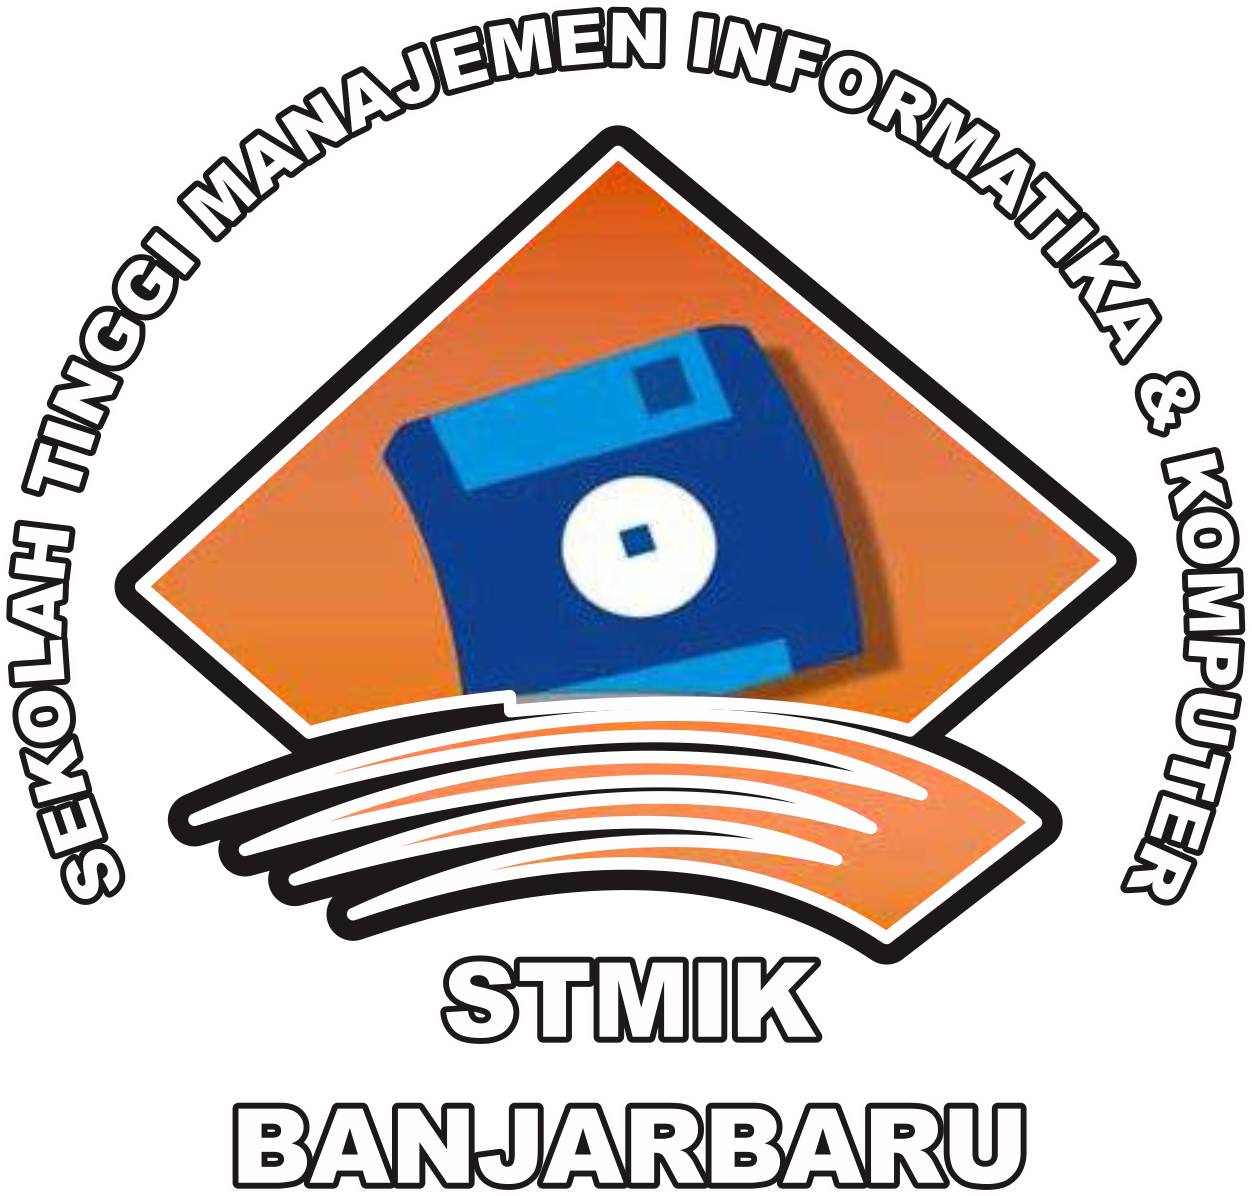 STMIK Banjarbaru